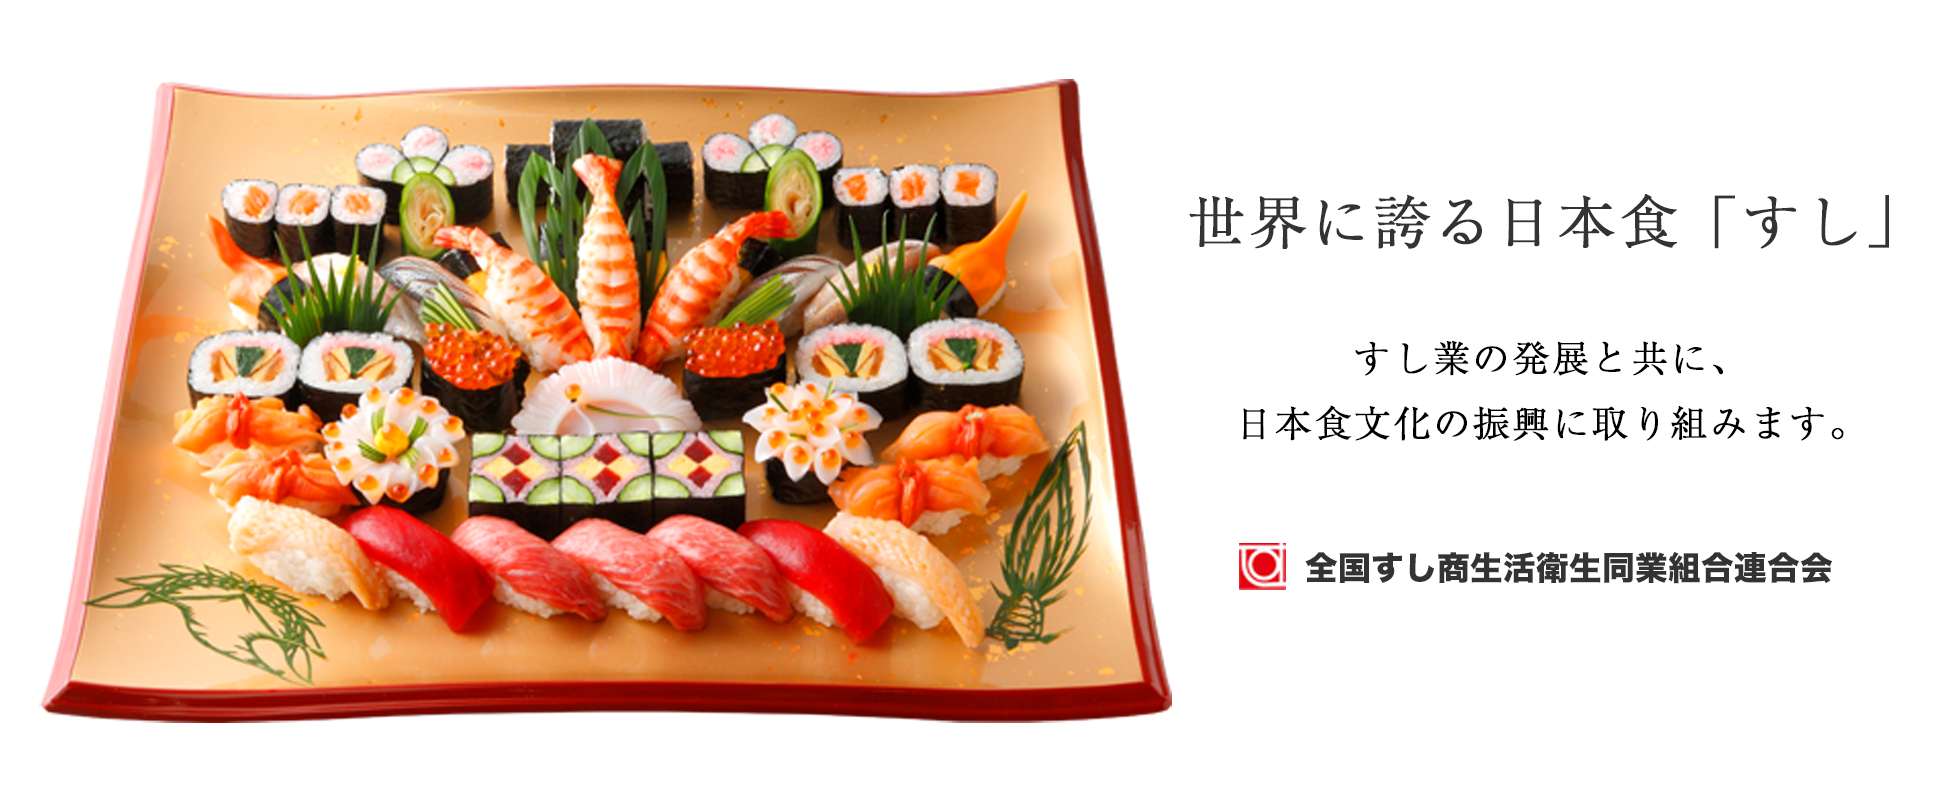 世界に誇る日本食。すし業の発展と共に、日本食文化の振興に取り組みます。